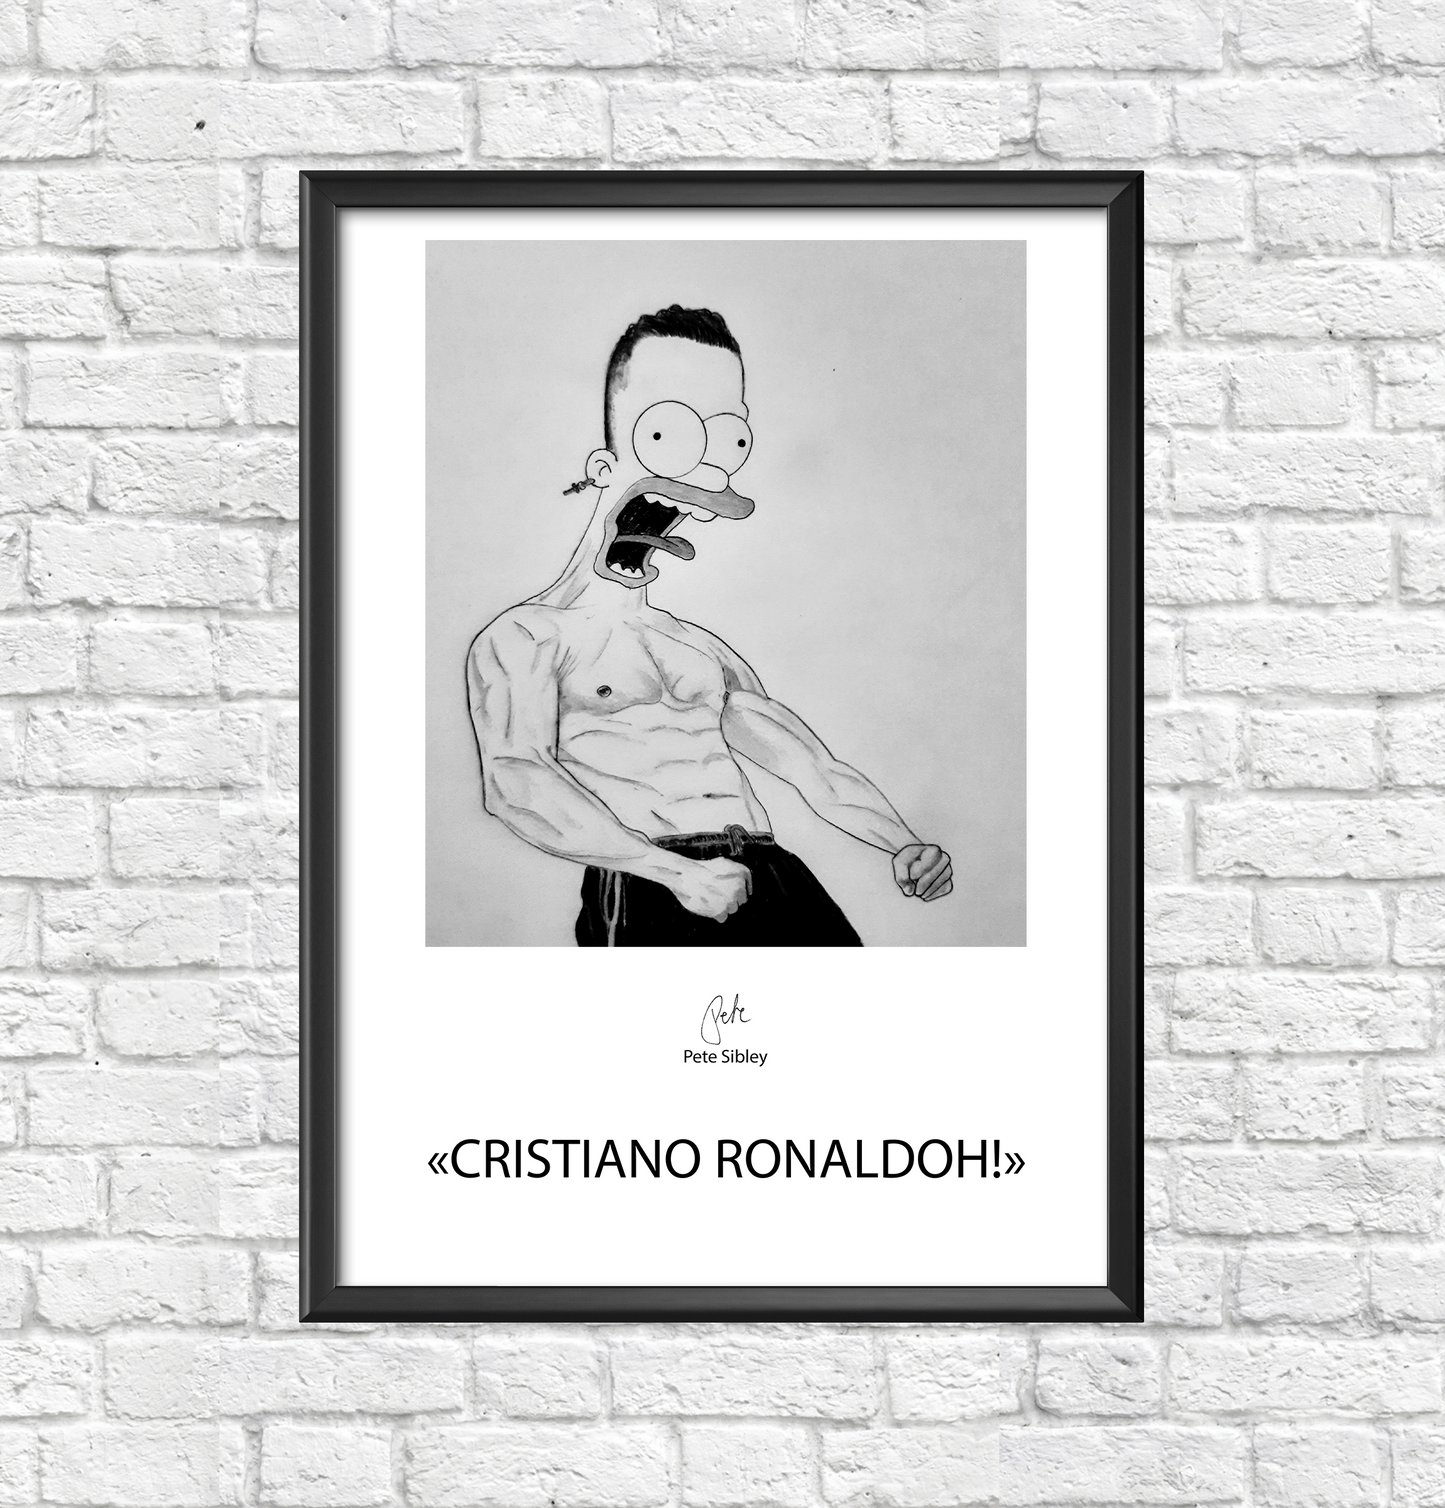 Cristiano Ronaldoh! artposter